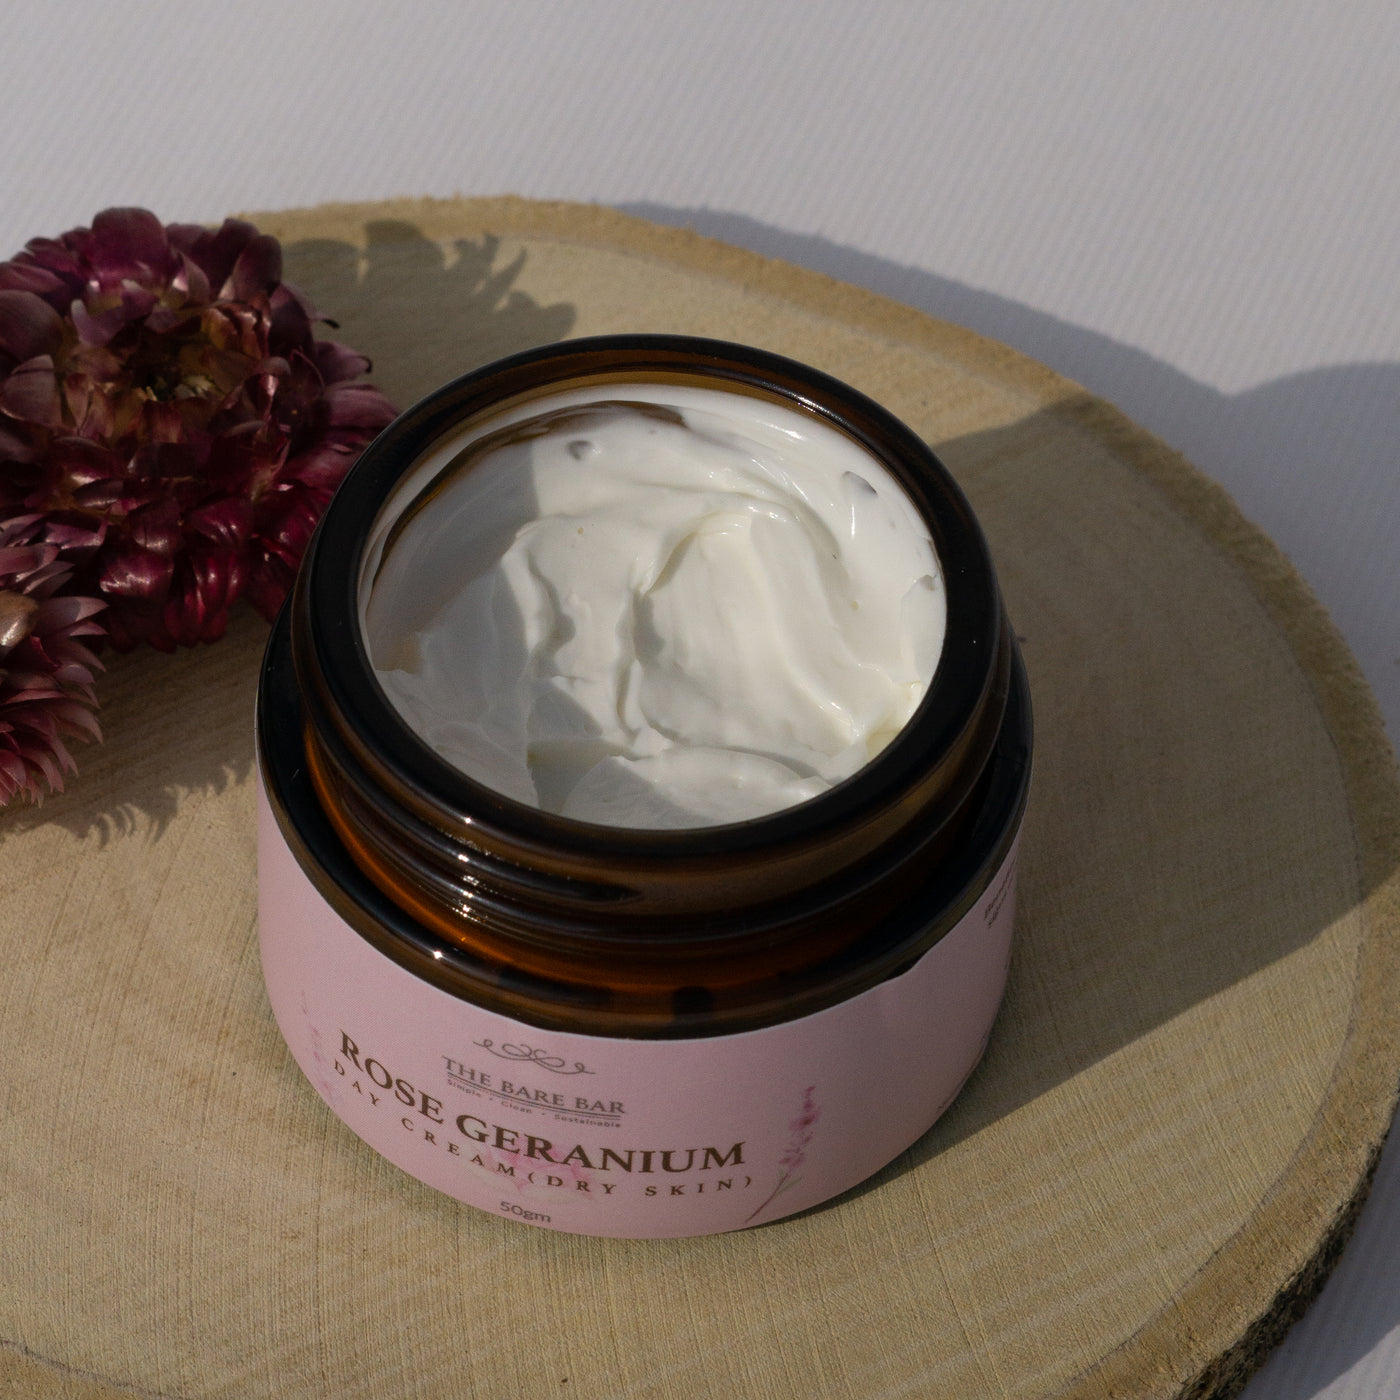 Rose Geranium Day Cream (Dry Skin) - 50 g